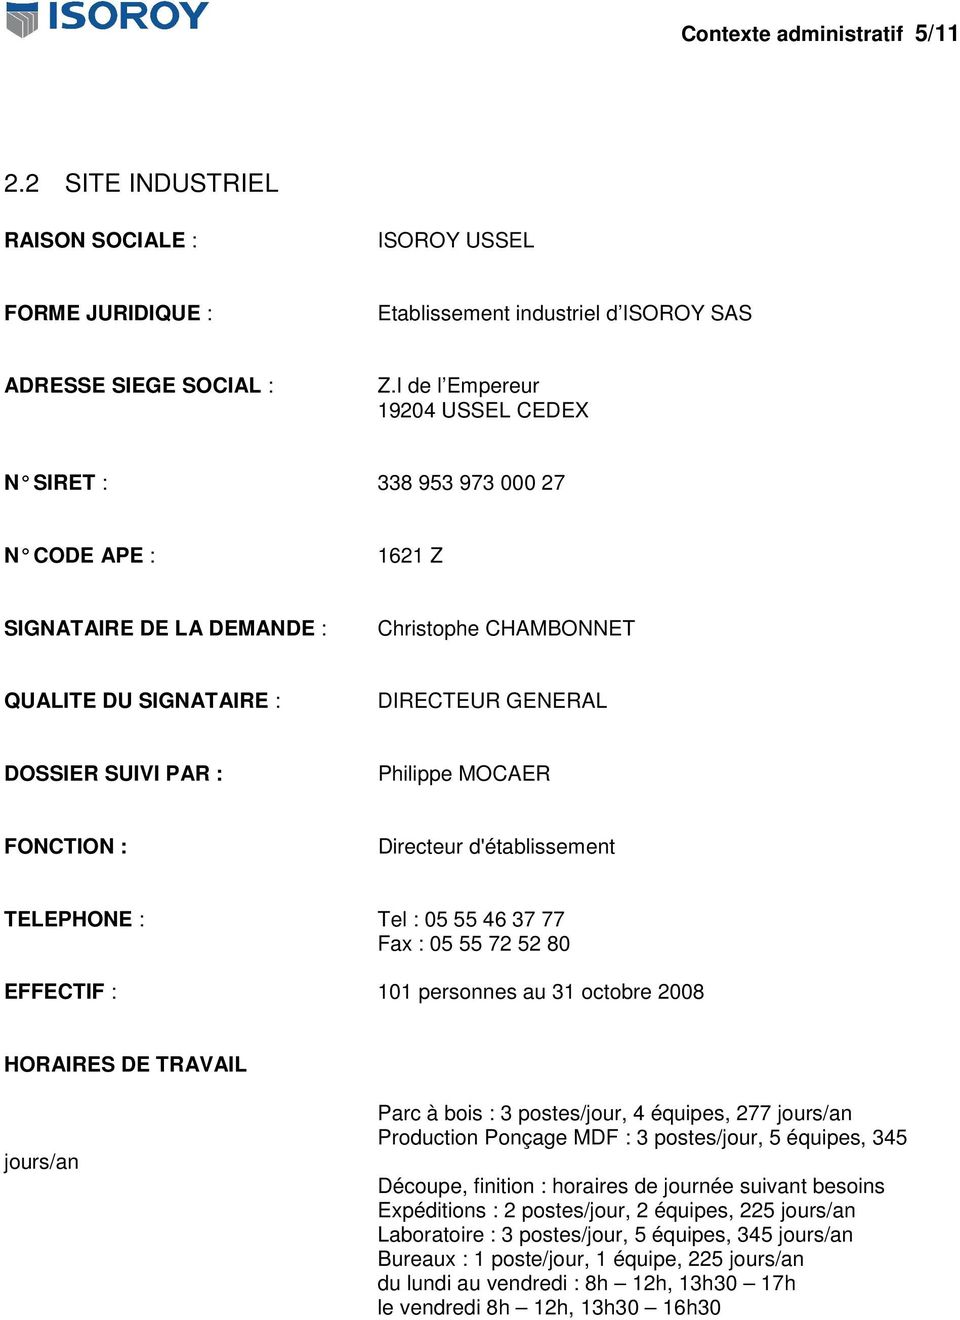 Philippe MOCAER FONCTION : Directeur d'établissement TELEPHONE : Tel : 05 55 46 37 77 Fax : 05 55 72 52 80 EFFECTIF : 101 personnes au 31 octobre 2008 HORAIRES DE TRAVAIL jours/an Parc à bois : 3